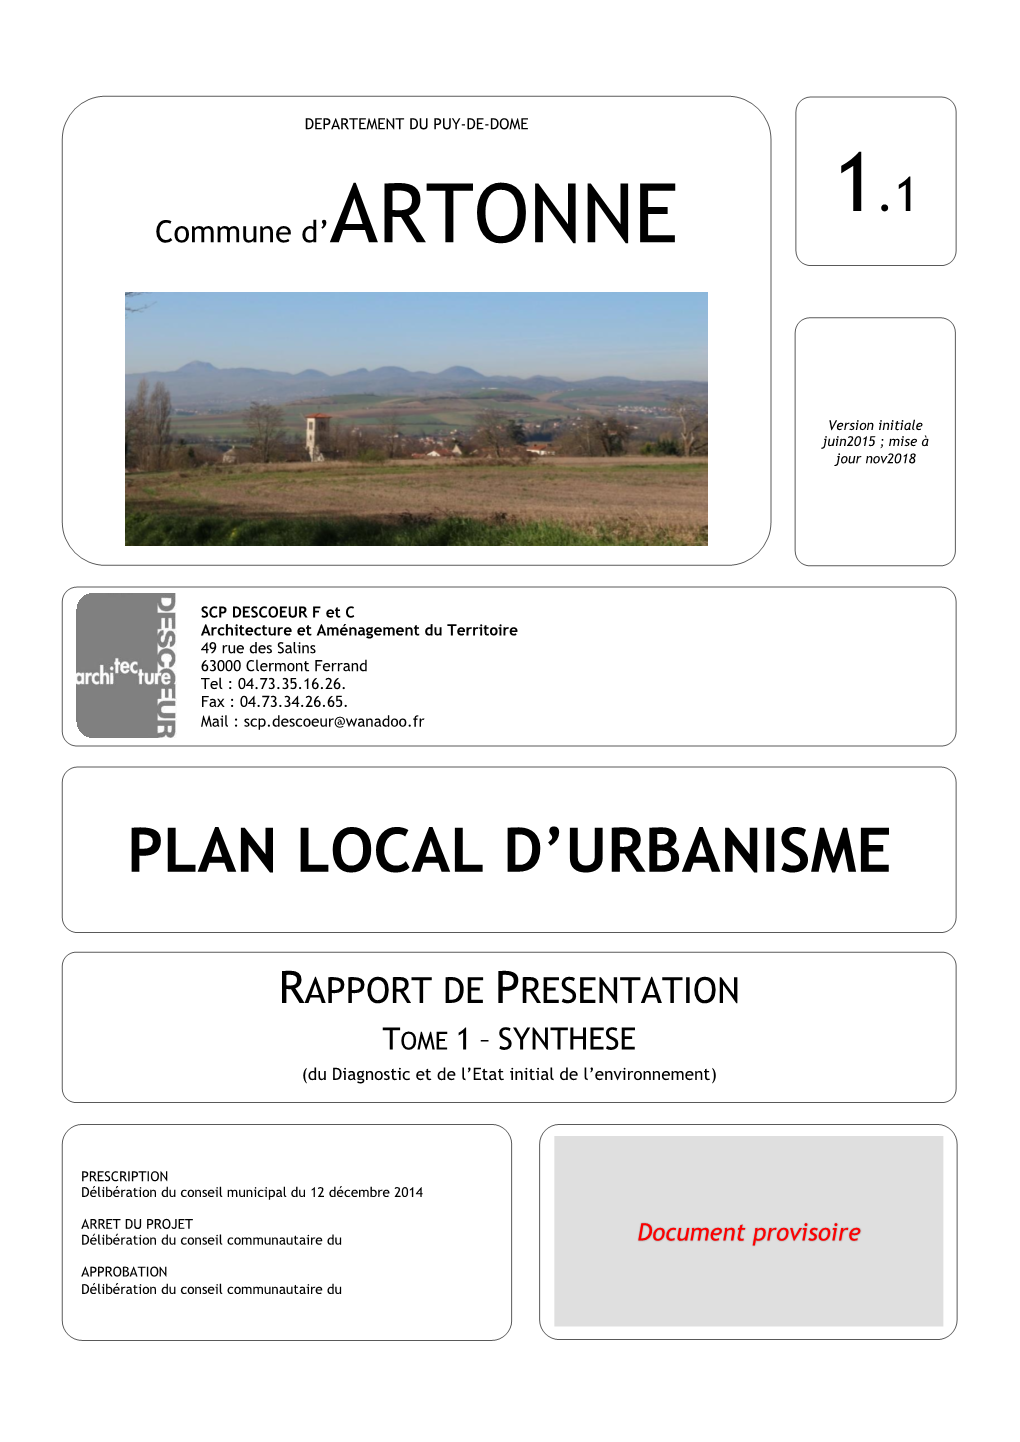 Plan Local D'urbanisme (PLU) Est Le Principal Document D'urbanisme De Planification De L'urbanisme Communal